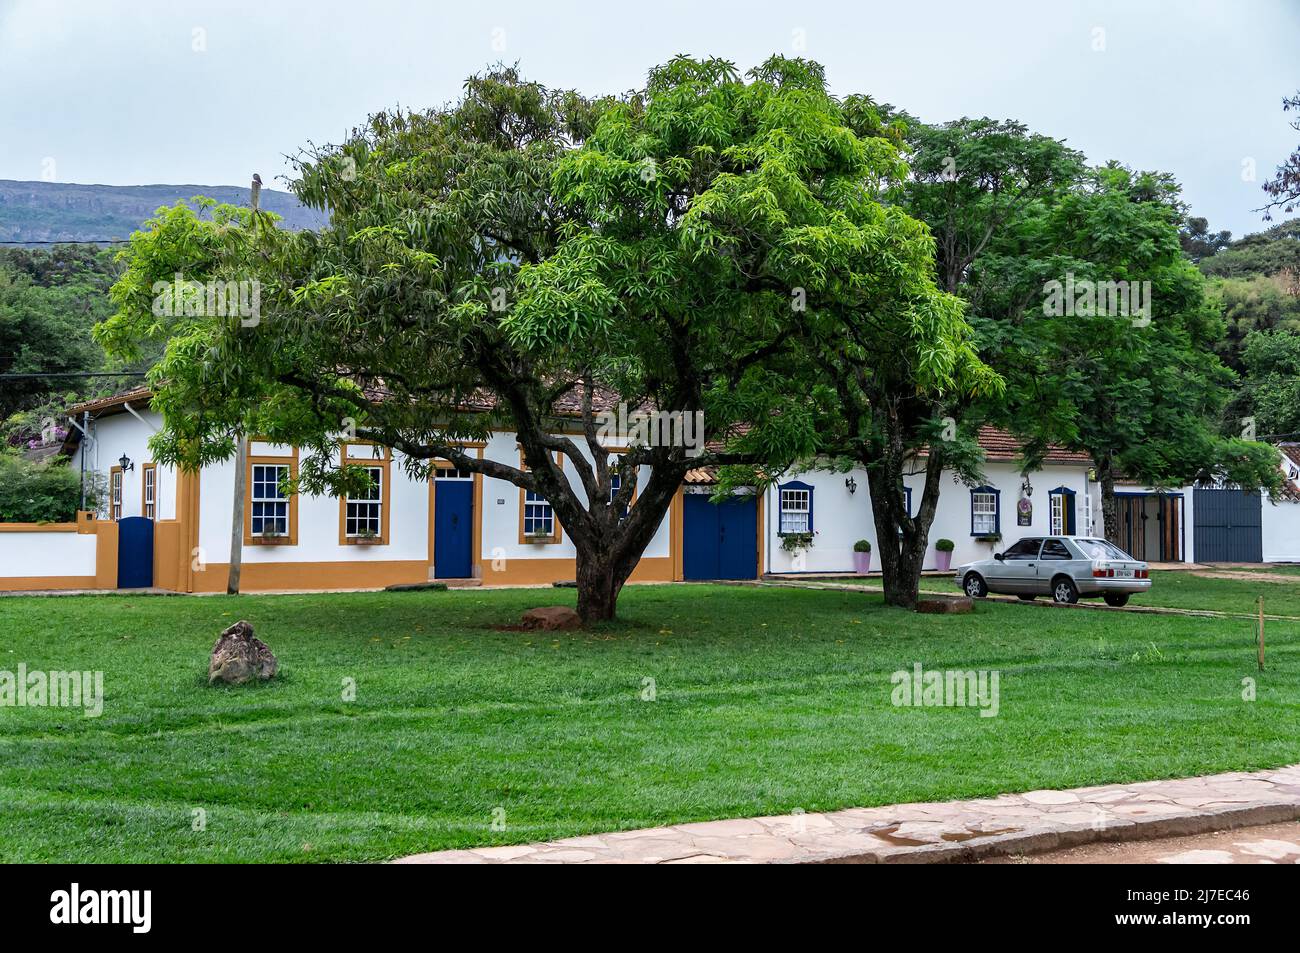 Grandes árboles frescos y verdes en medio de un campo de hierba y frente a las casas coloniales ubicadas en la calle Silvio Vasconcelos en el centro histórico. Foto de stock